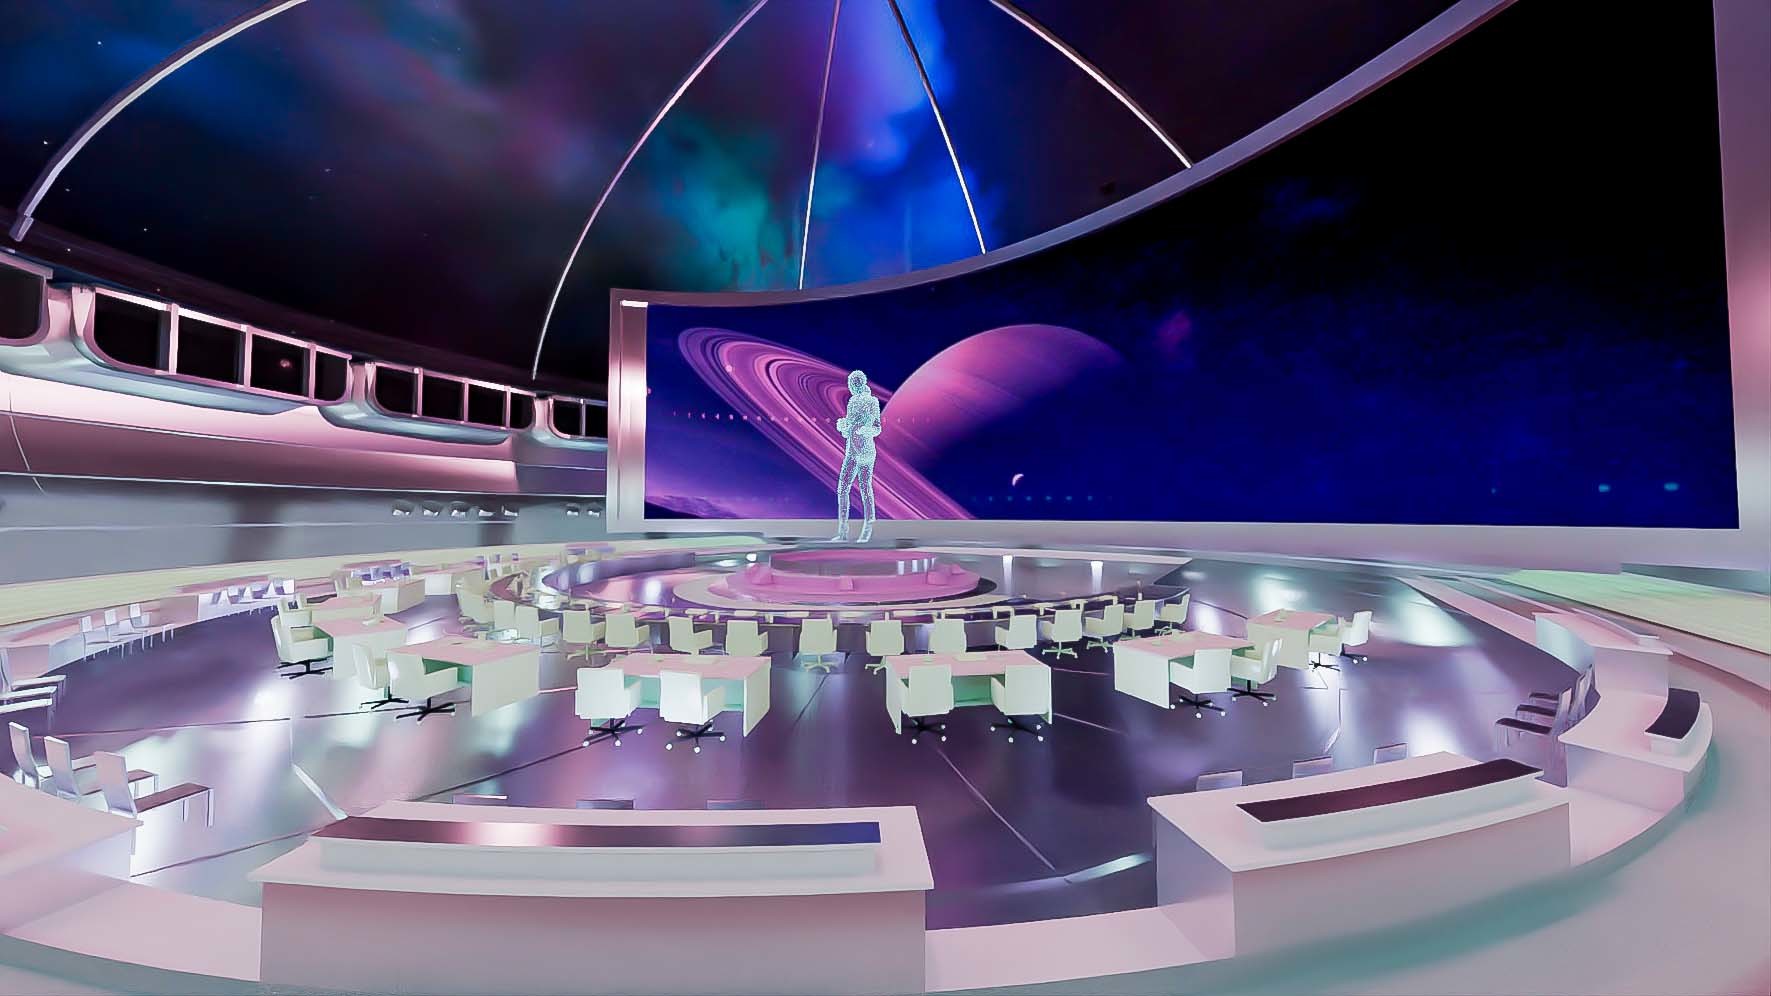 图片展示了一个未来风格的室内环境，中央有人物立体图像，周围是座椅和弧形桌子，背景是太空星球景观。